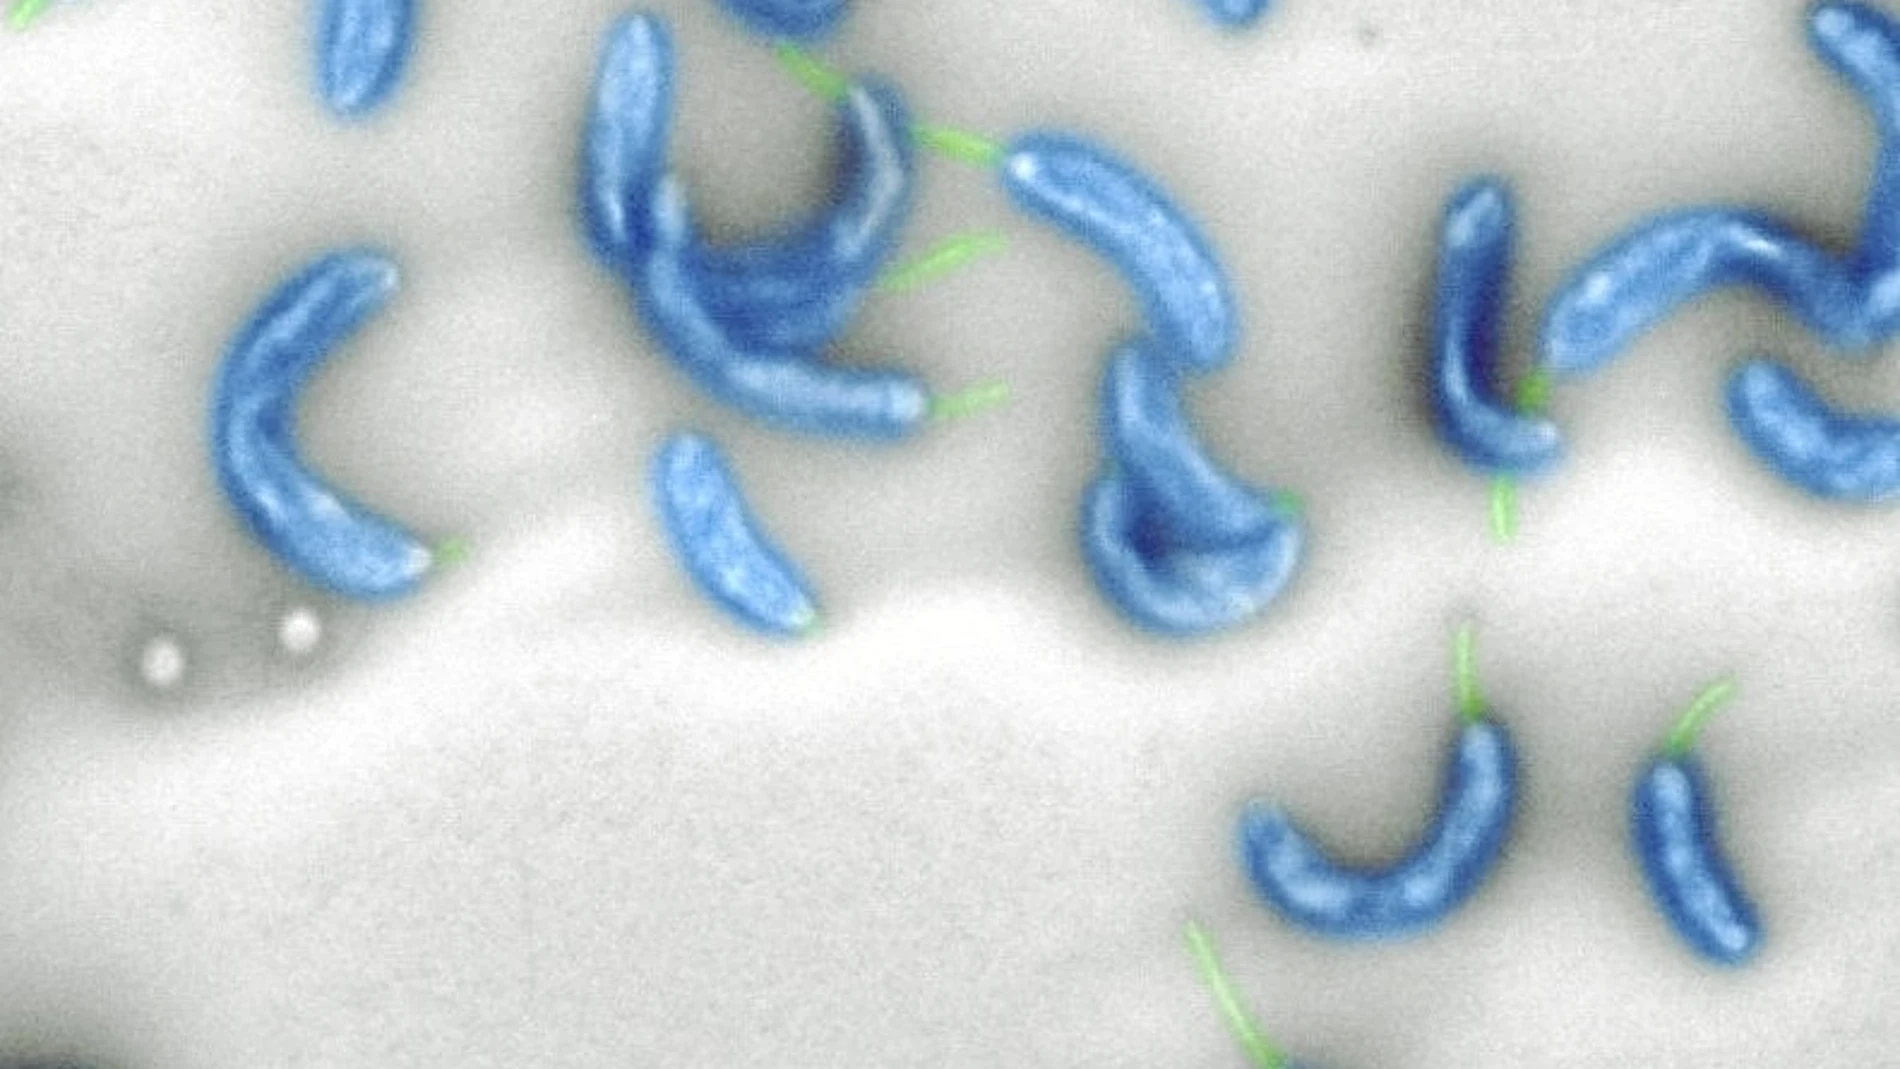 Imagen de laboratorio de C. crescentus, una bacteria inofensiva que vive en agua dulce en todo el mundo